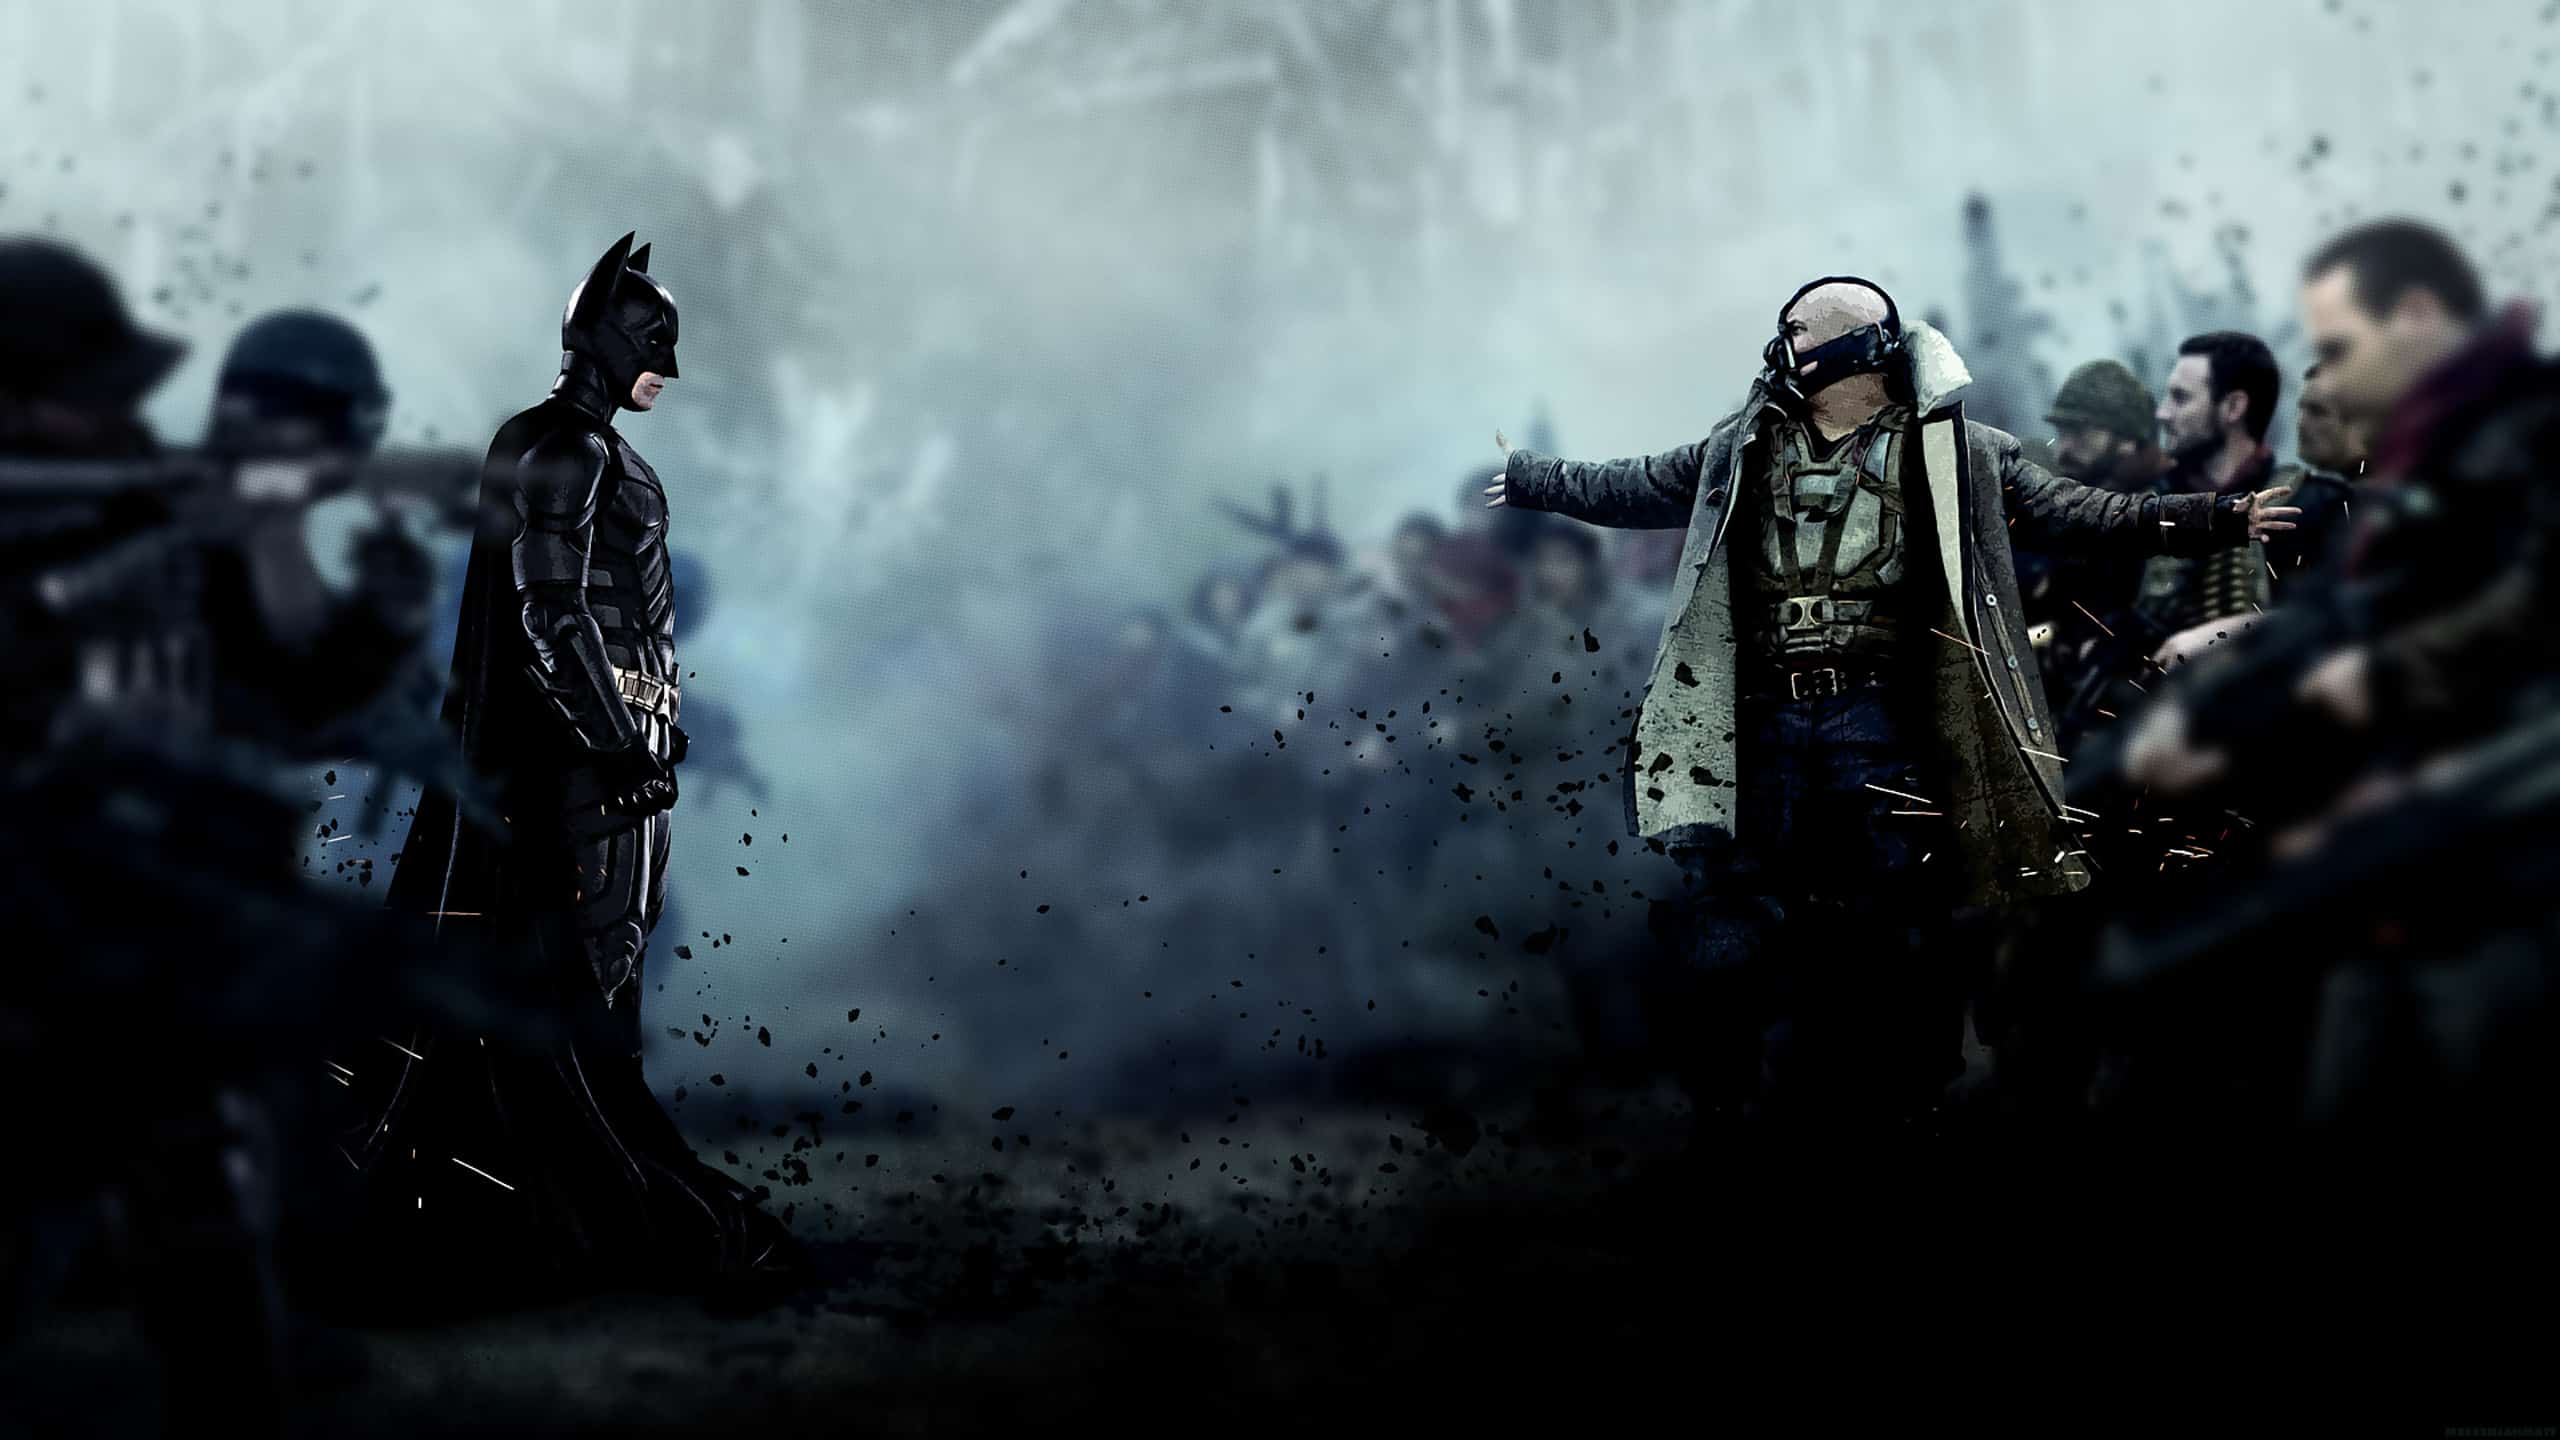 The Dark Knight Rises 4K 2012 big poster